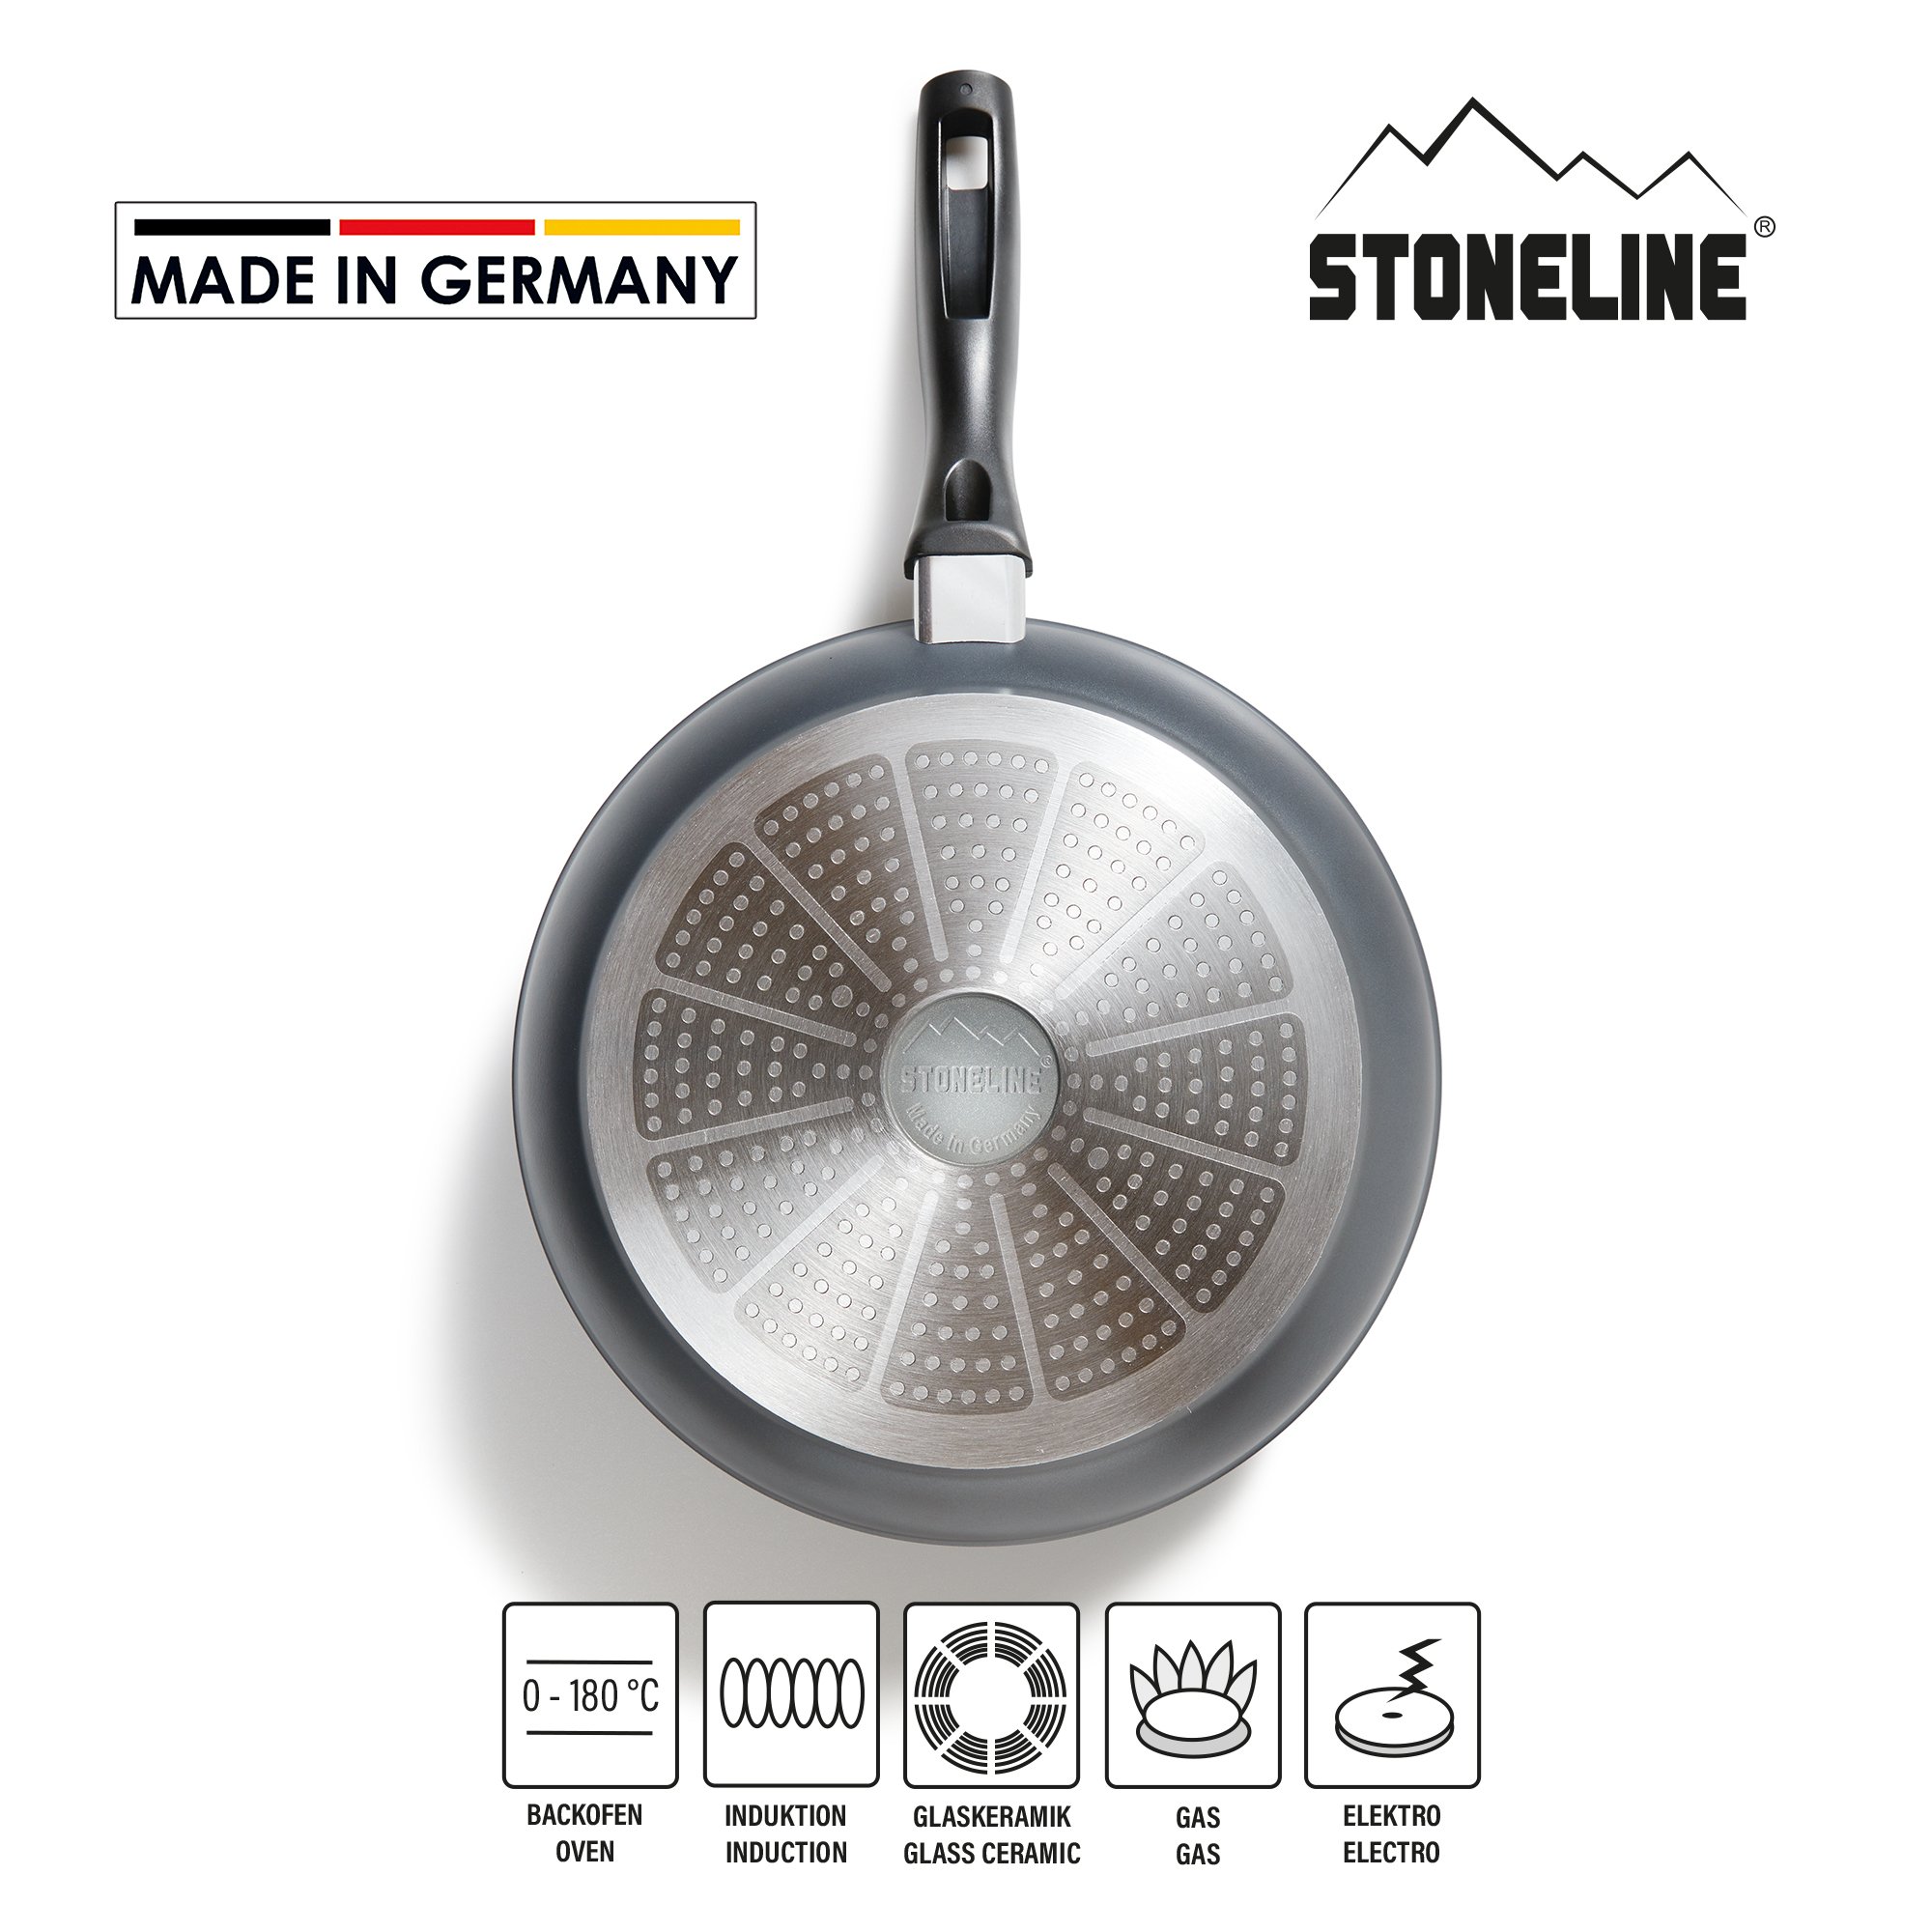 STONELINE® Bratpfanne 28 cm, Made in Germany, antihaftbeschichtete Pfanne, Induktion geeignet